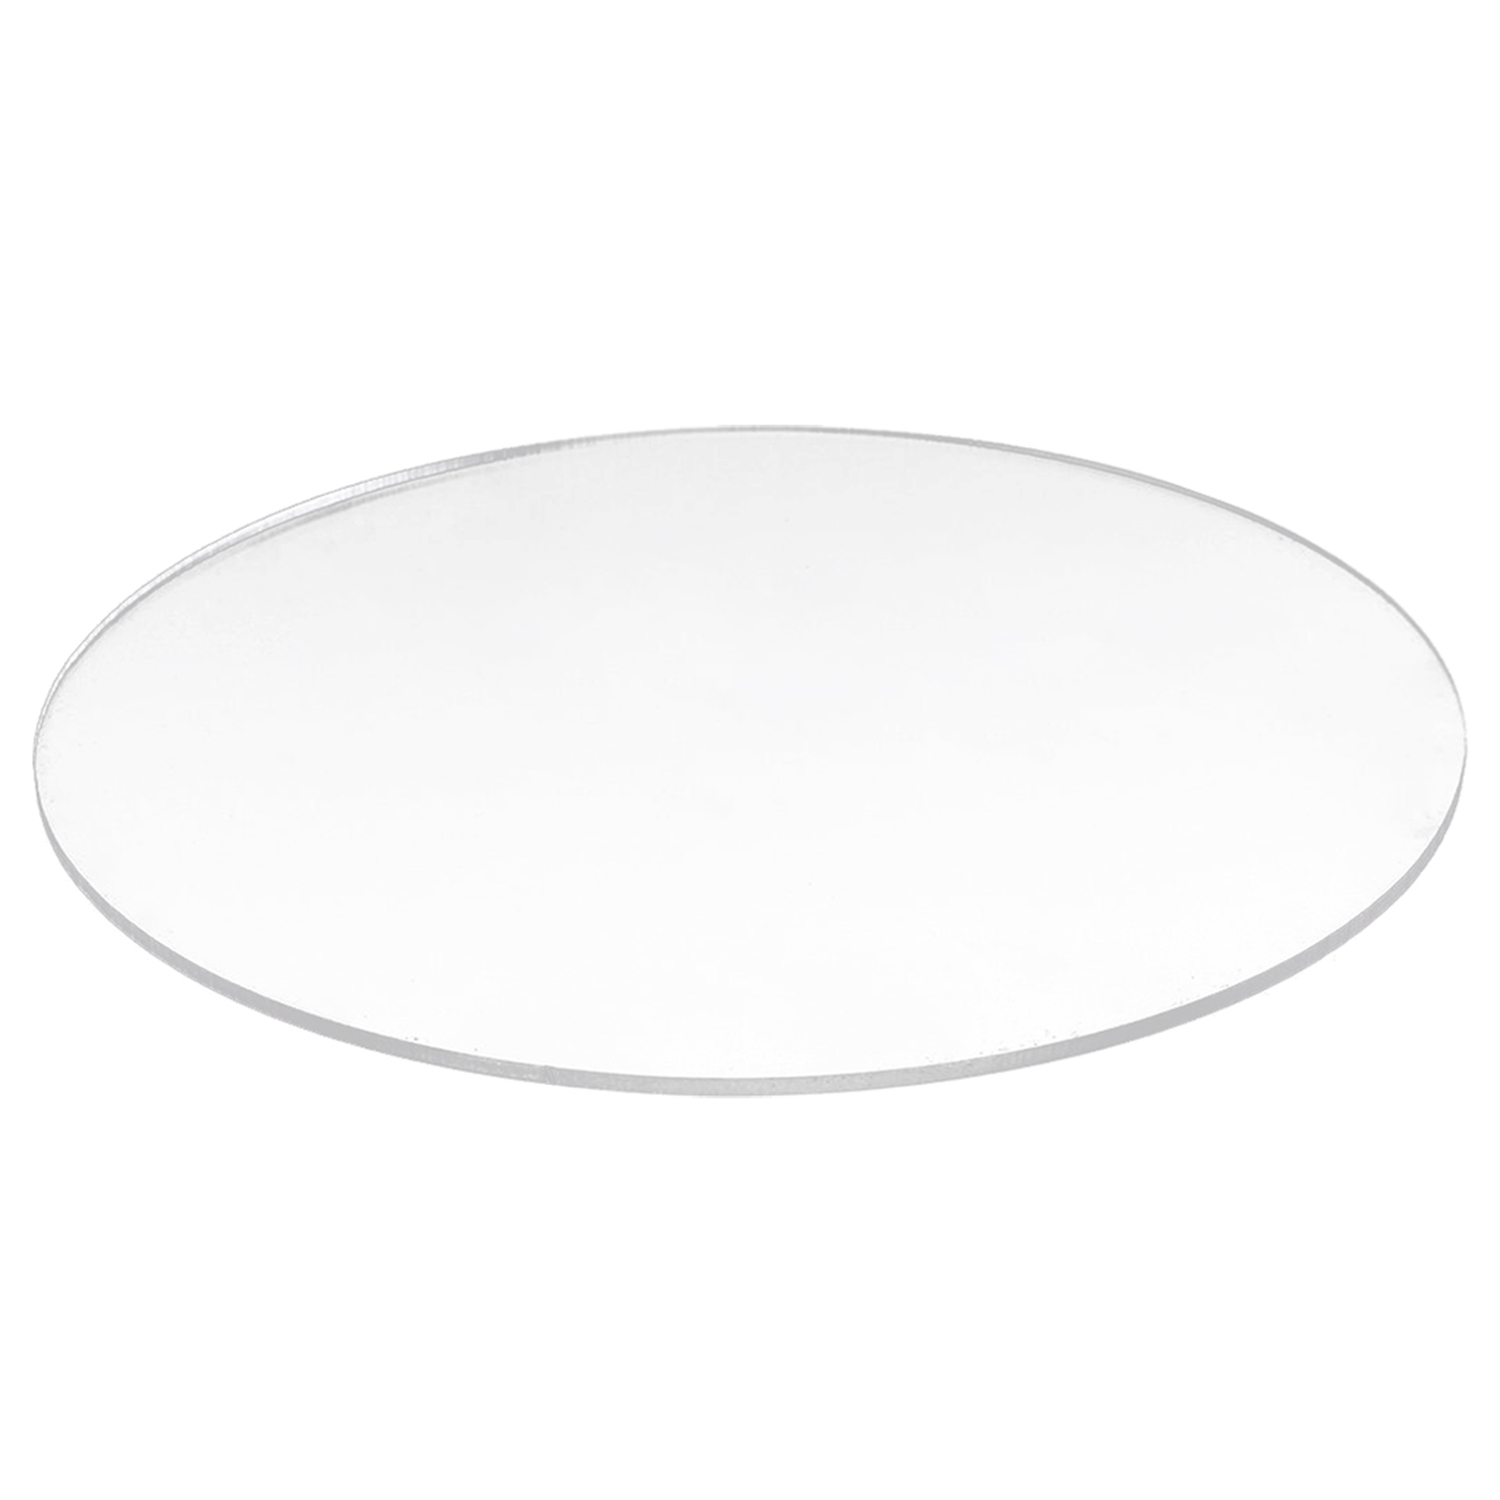 투명한 3mm 두꺼운 거울 아크릴 둥근 원판